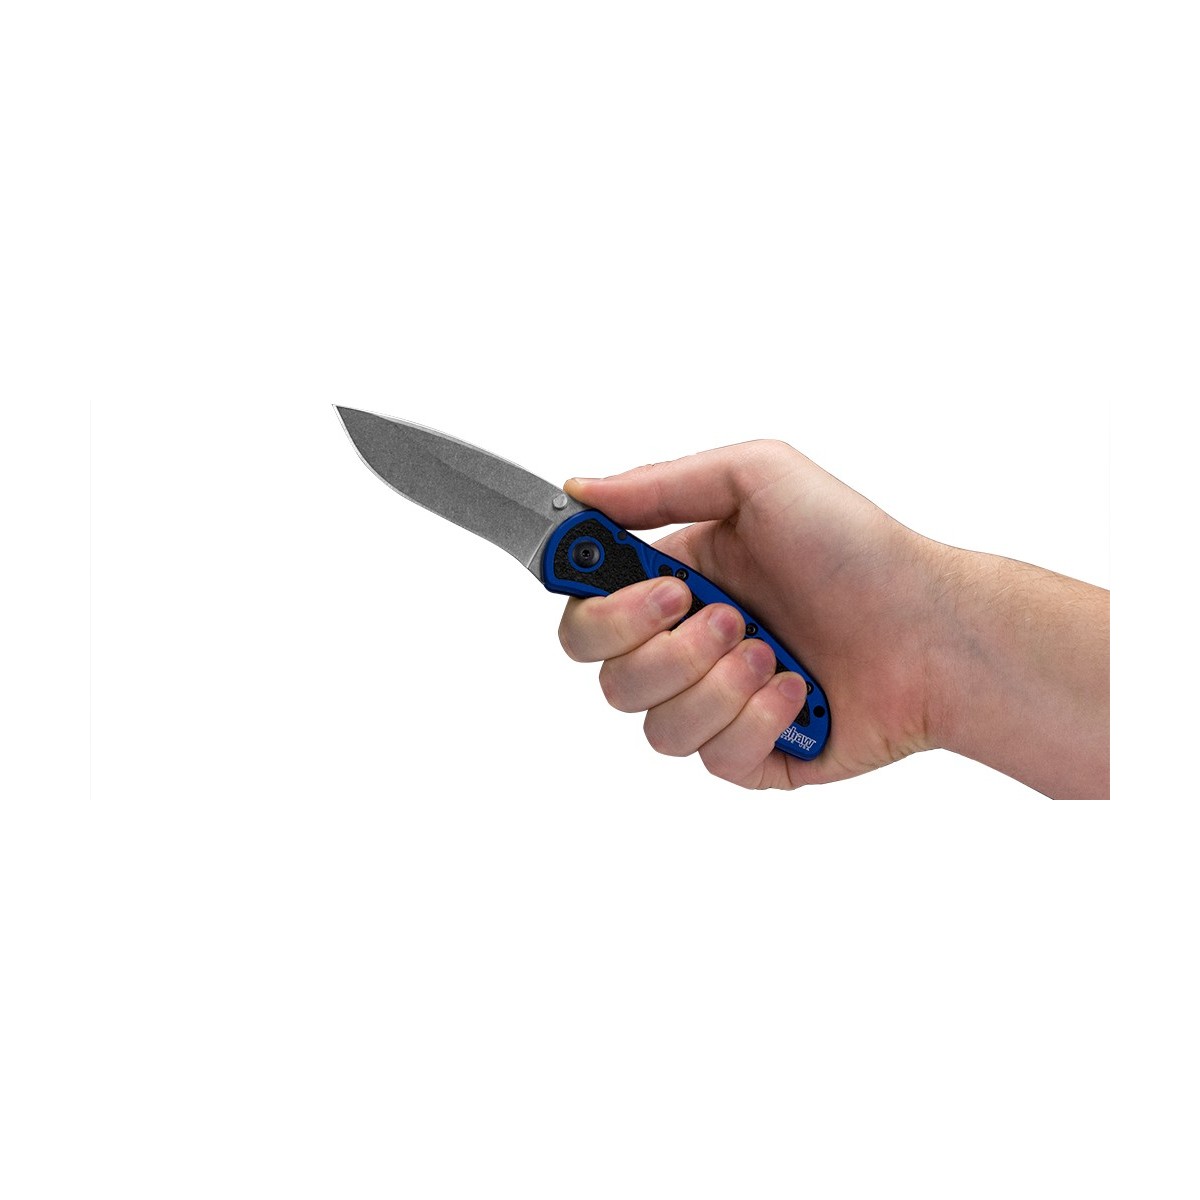 มีดพับ Kershaw Blur Assisted Opening Knife Black (3.375" Black Serr),1670GBBLKST